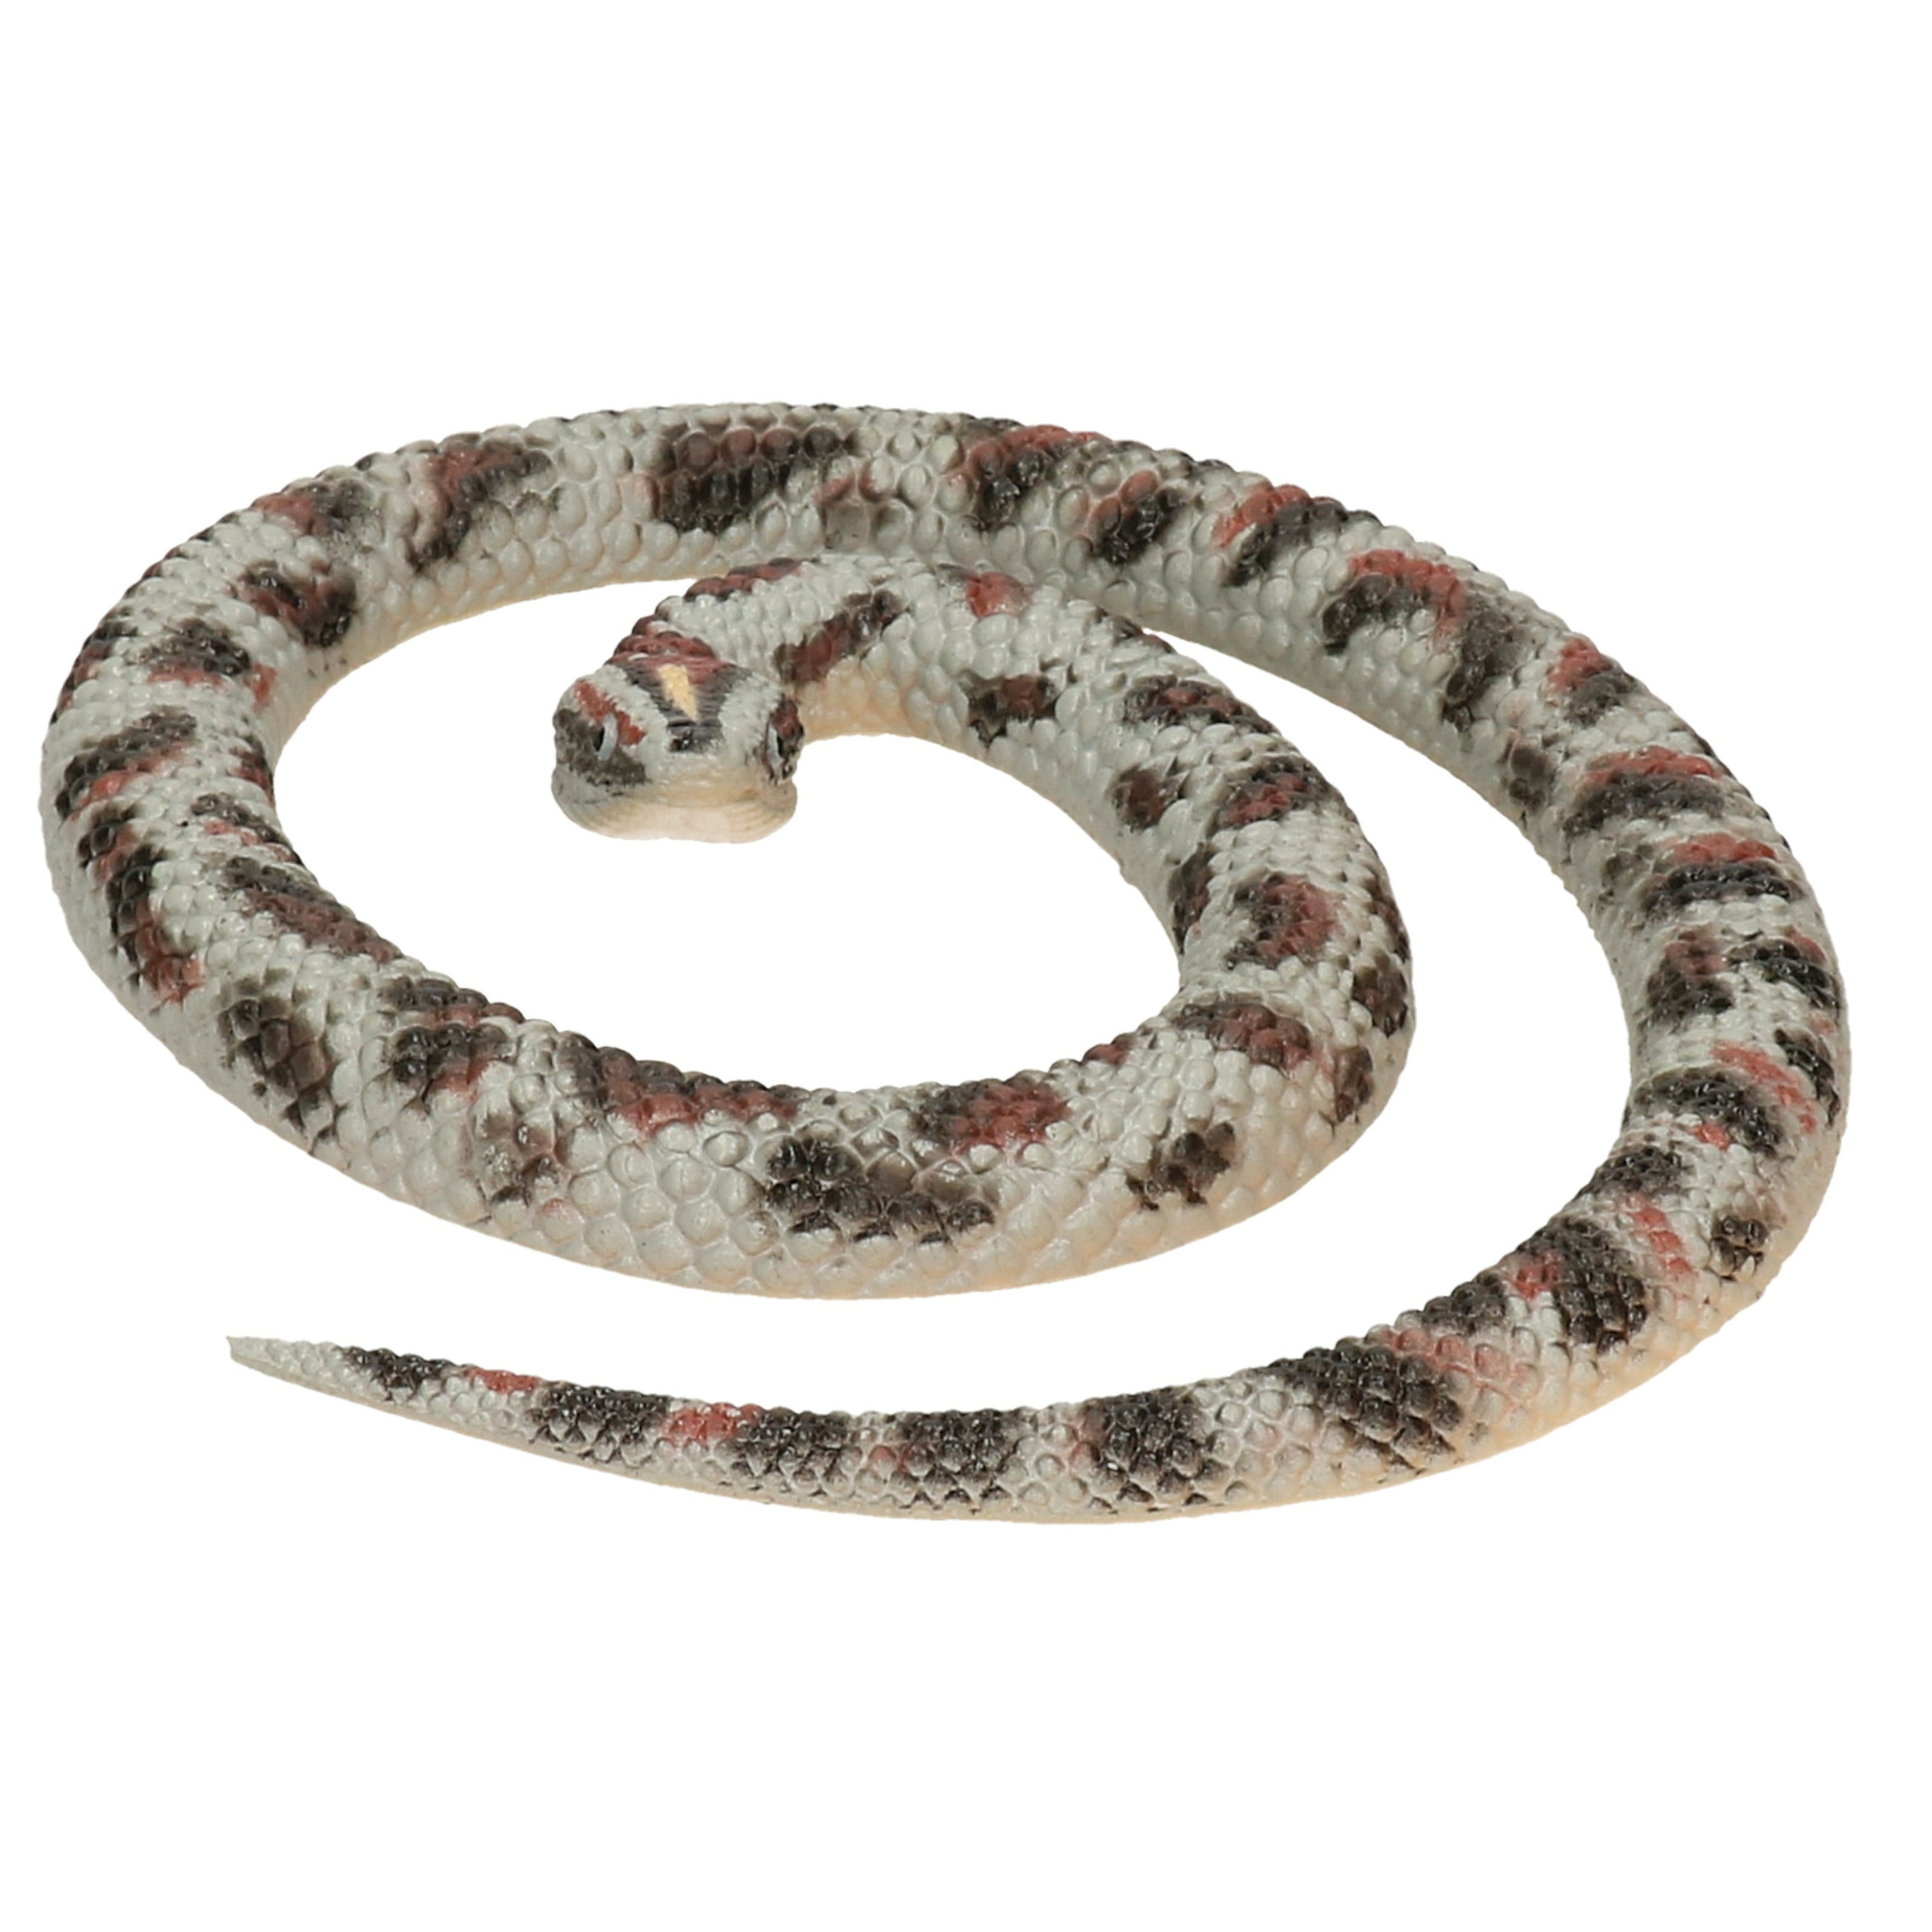 Afbeelding Speelgoed horror slang python 66 cm door Animals Giftshop